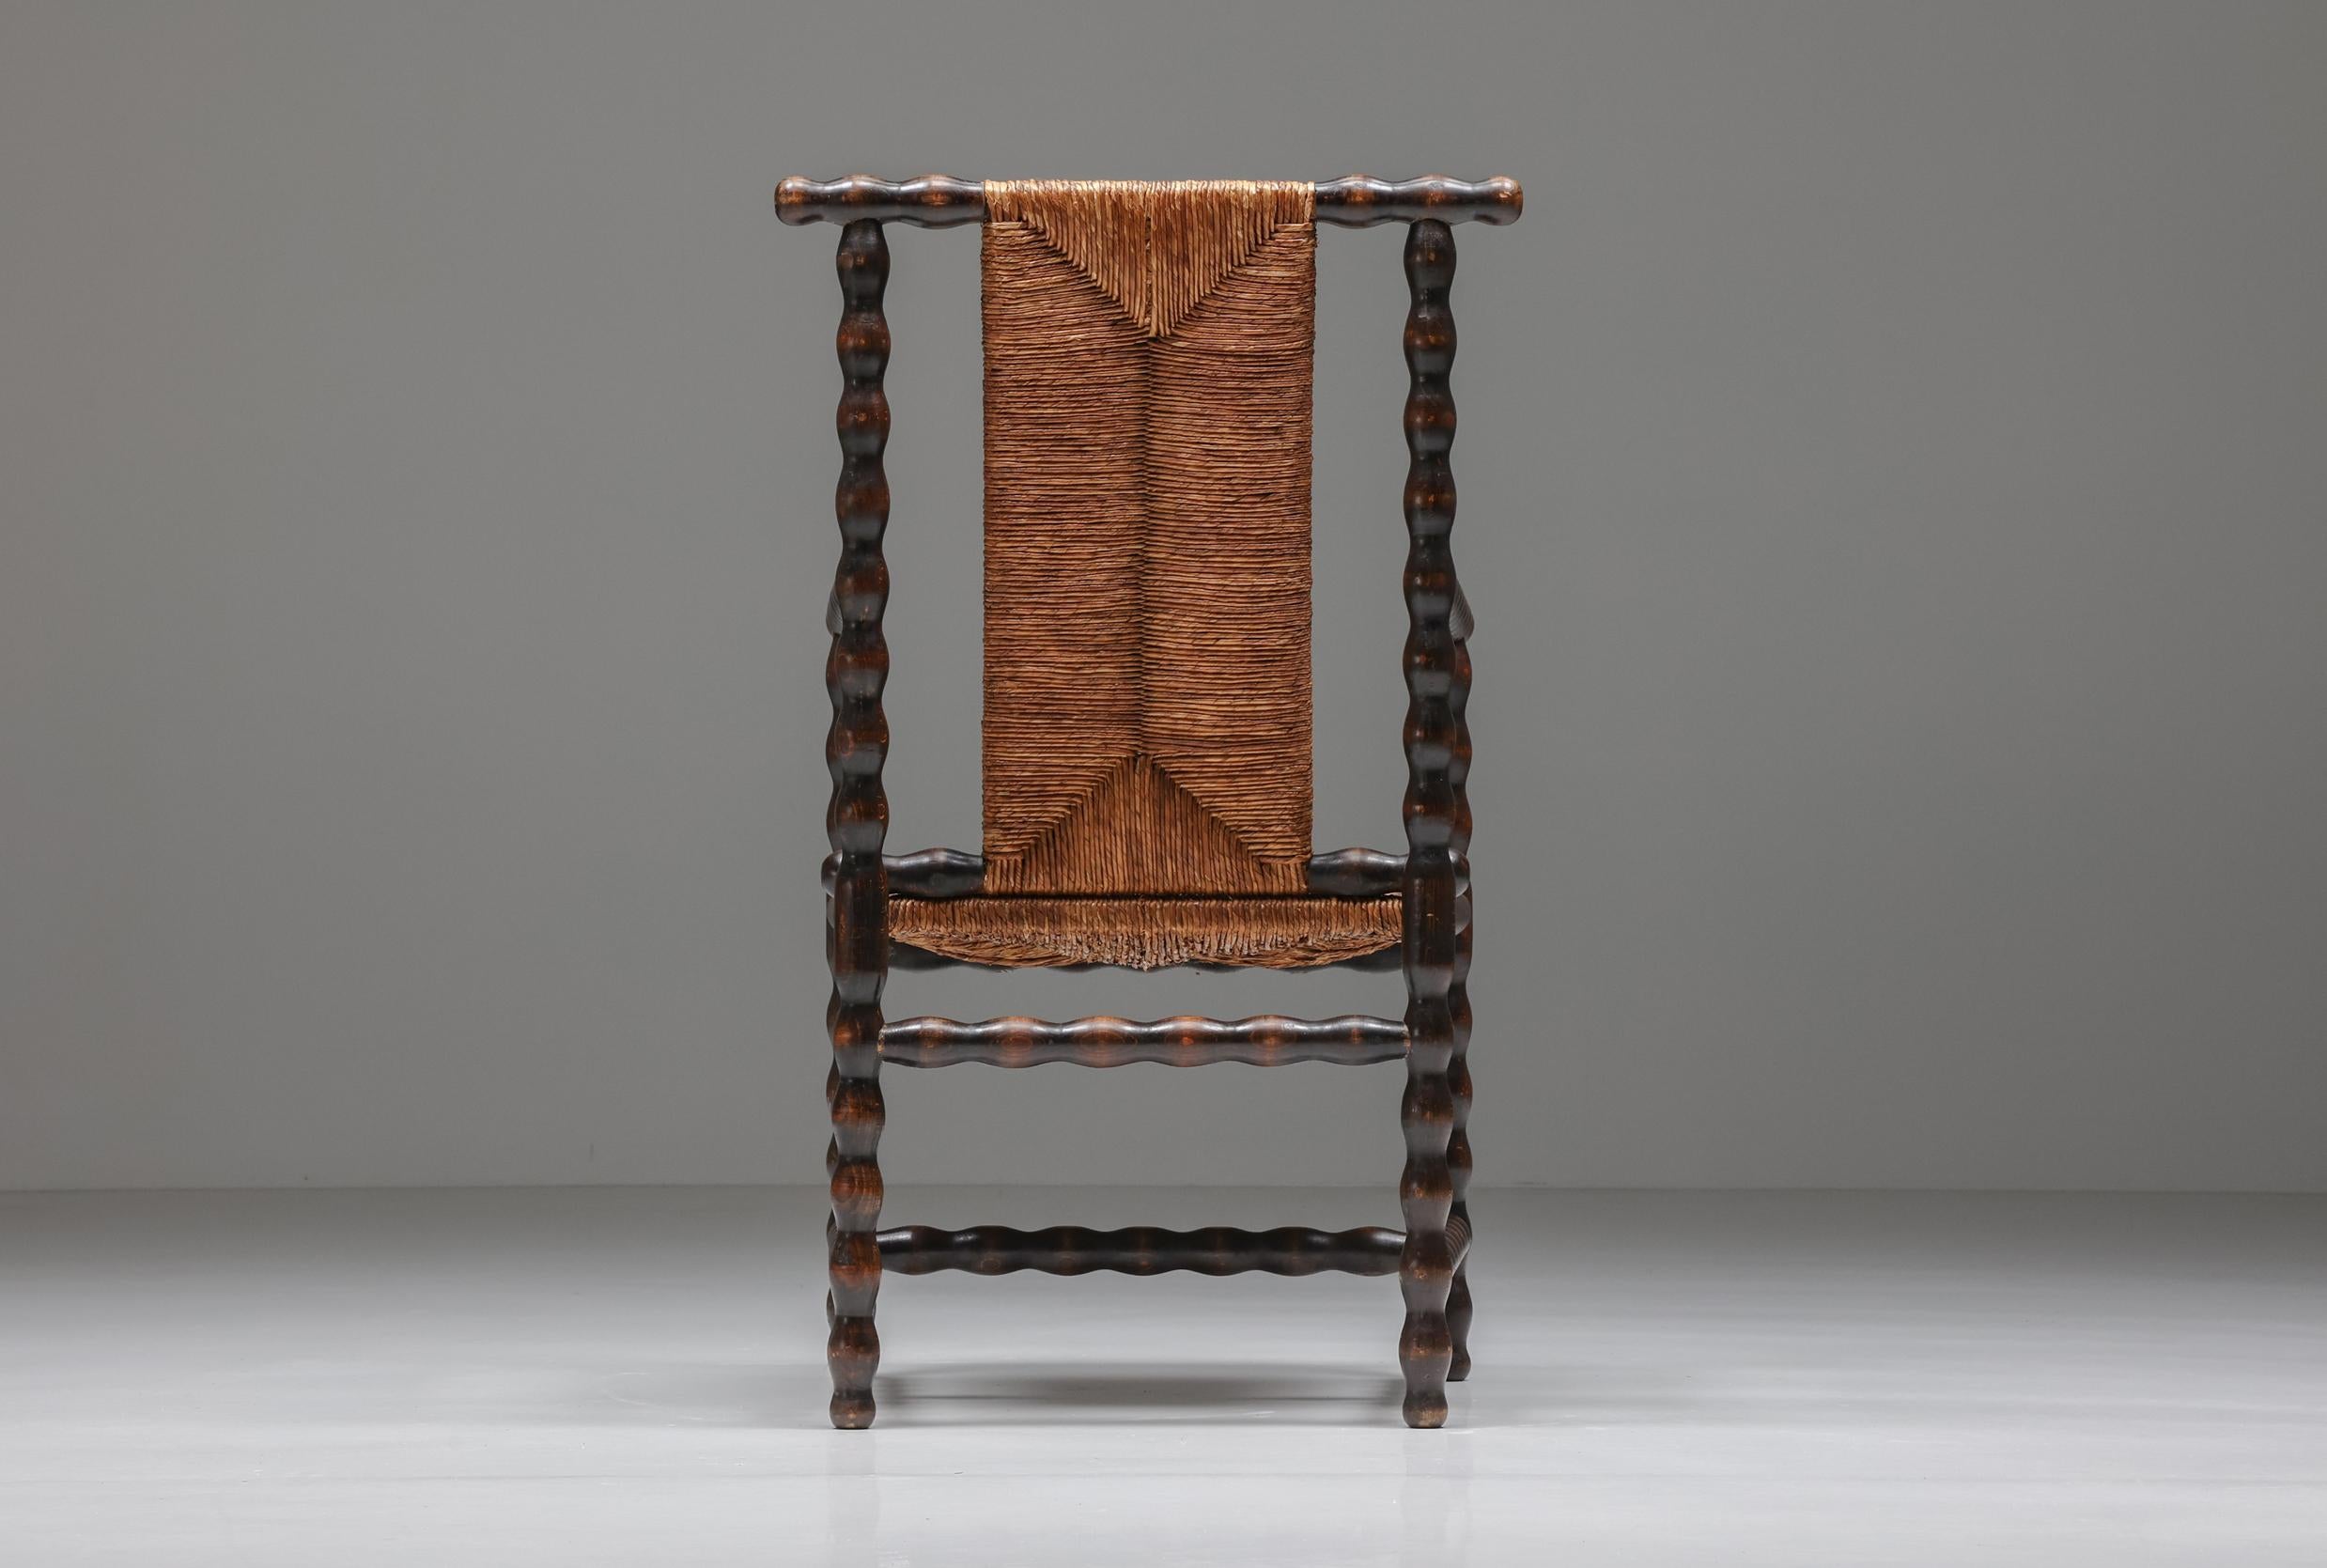 Ébénisé Jugendstil Josef Zotti chaise en osier brun foncé ébénisé, Autriche, 1911